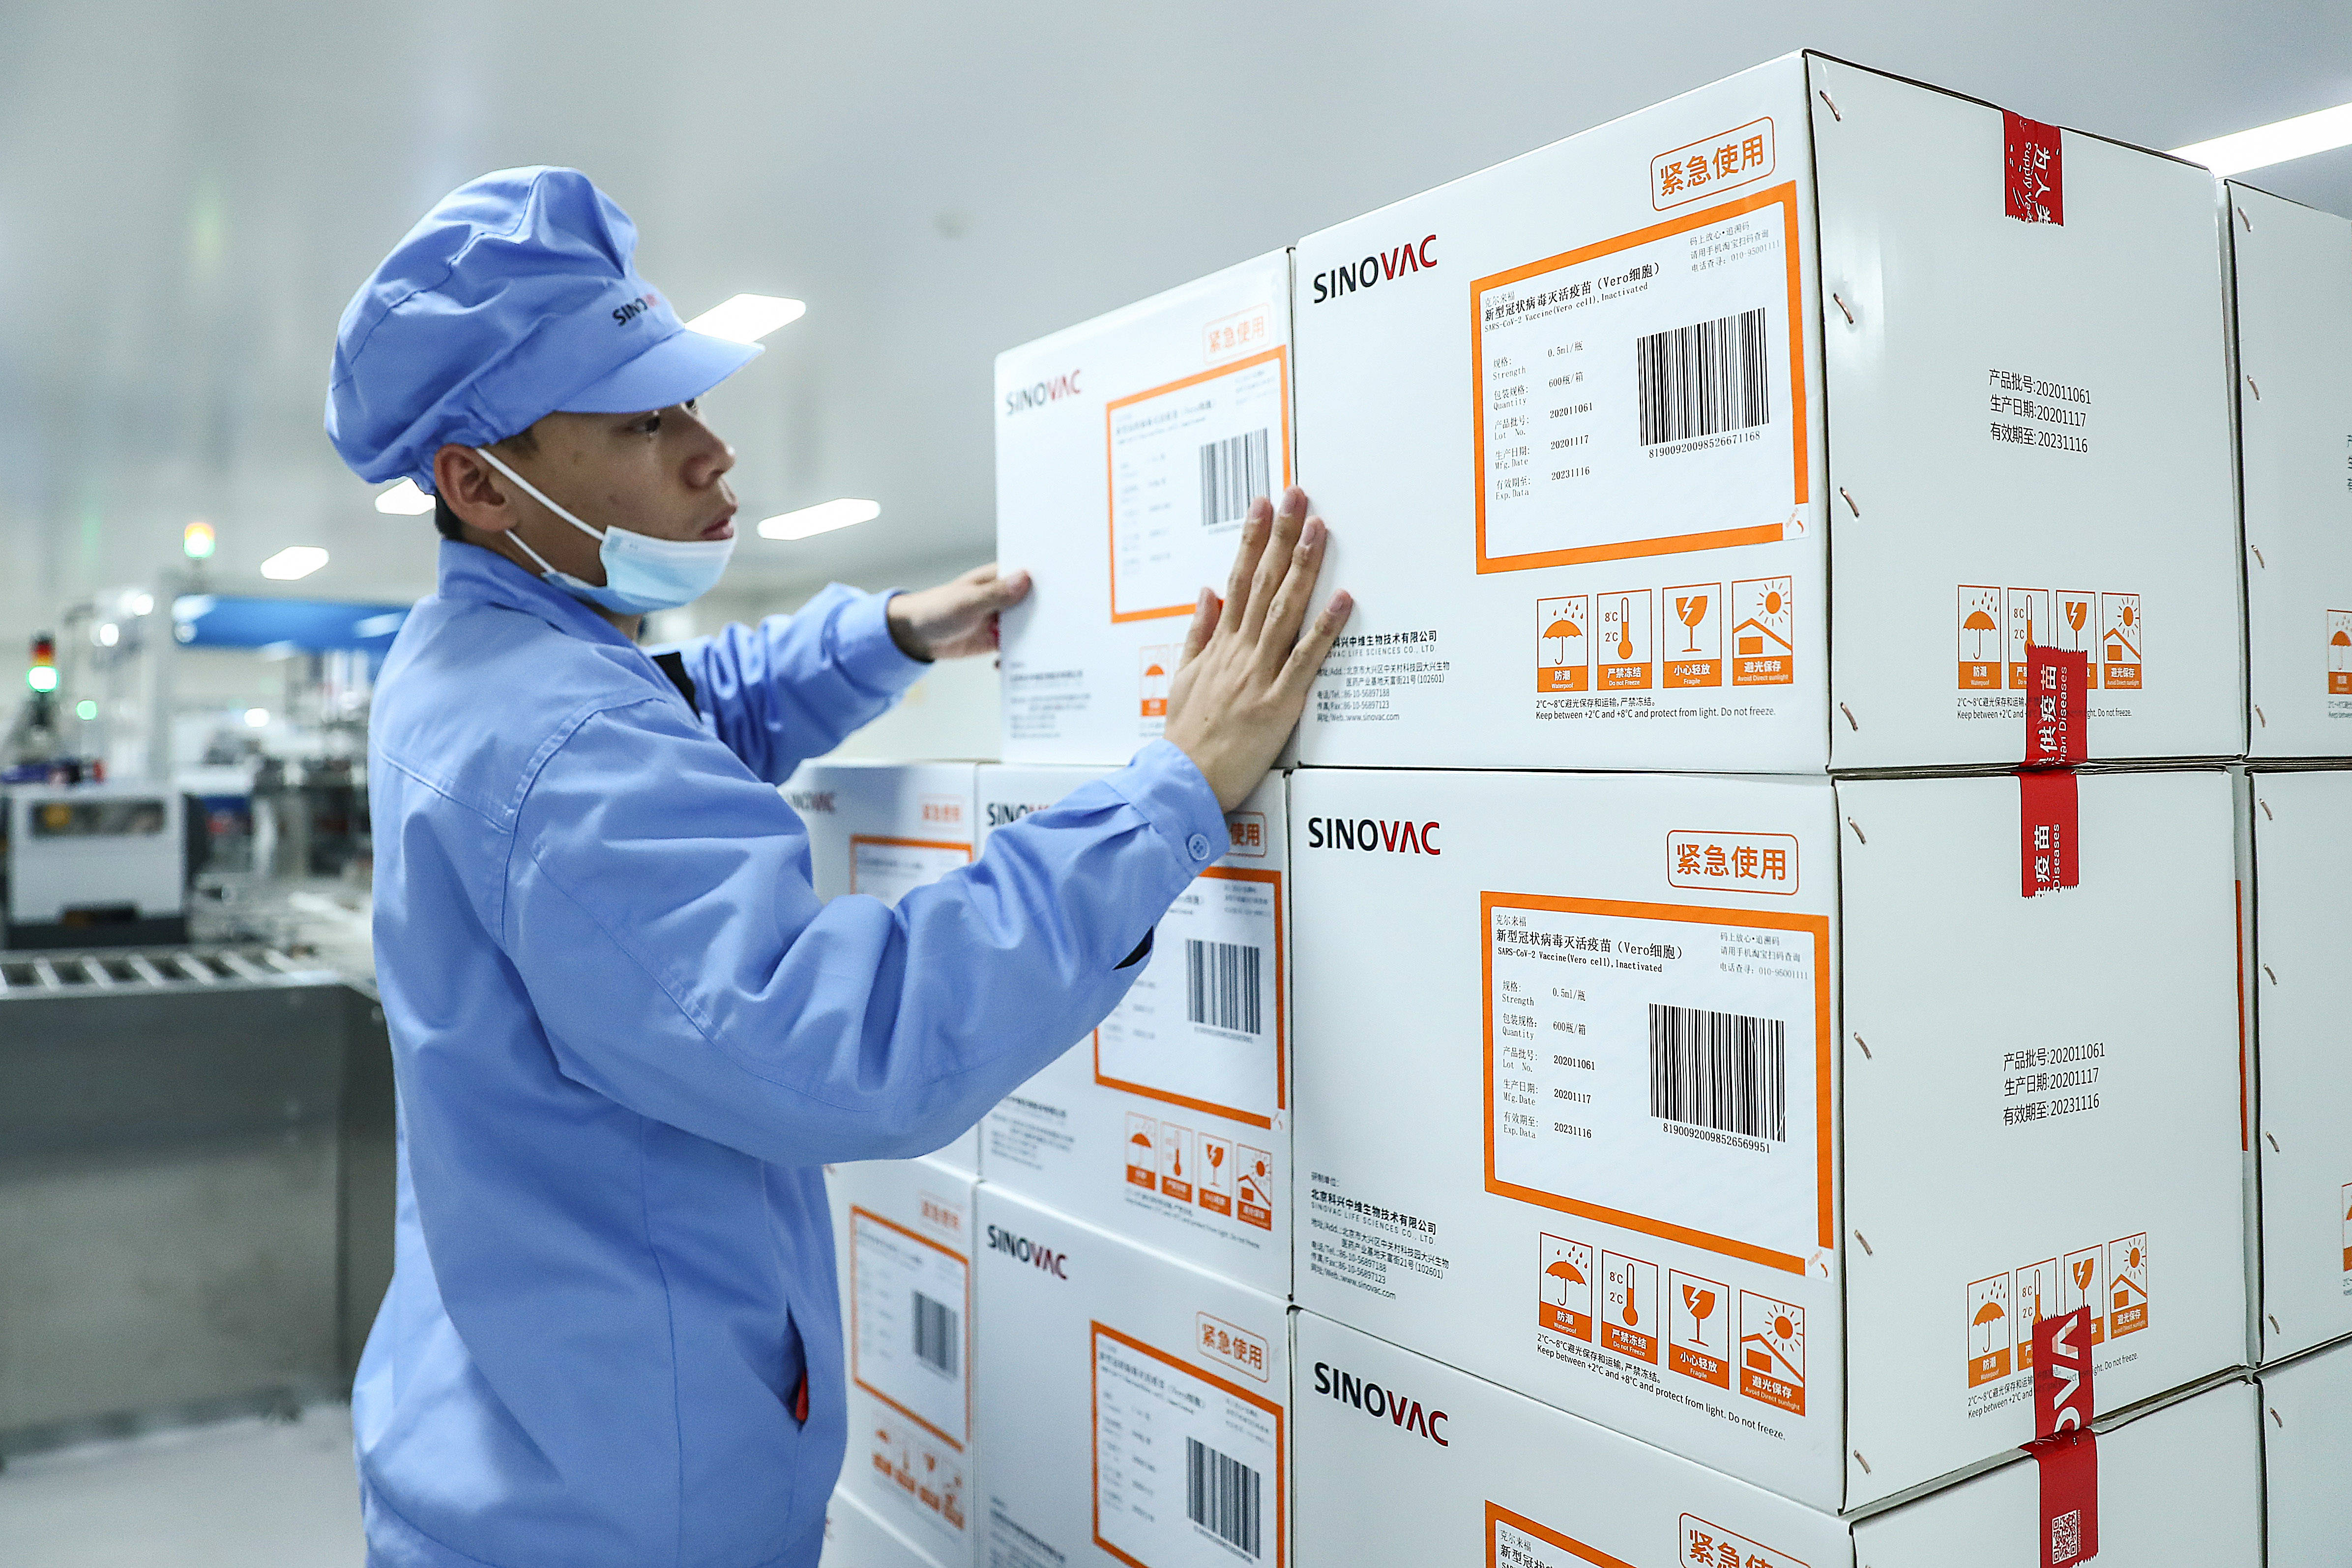 2020年12月23日,工作人员在科兴中维的新冠疫苗包装车间检查外包装